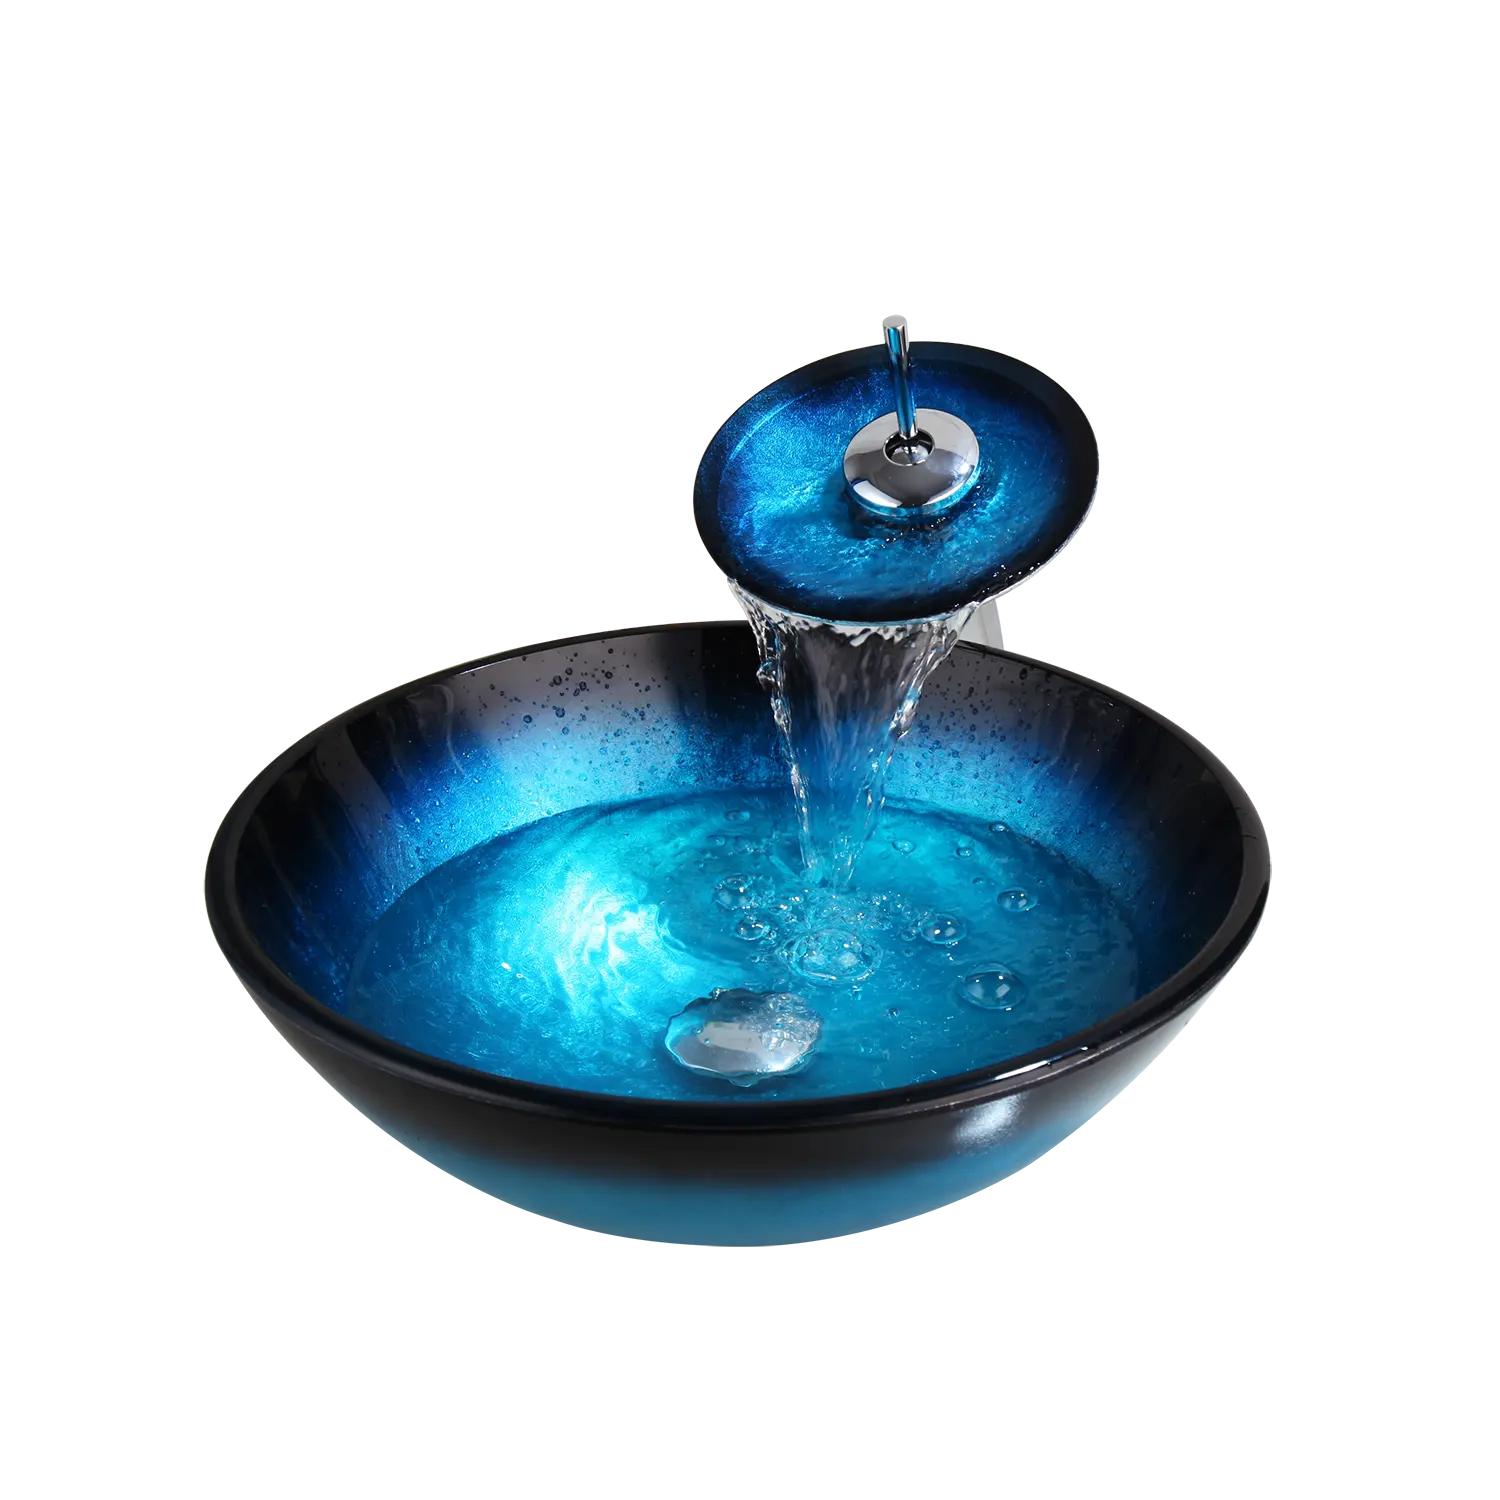 JIENI-Juego de grifos de lavabo de vidrio templado, conjunto de encimera de baño, mezclador de tocador, color azul, pintado a mano